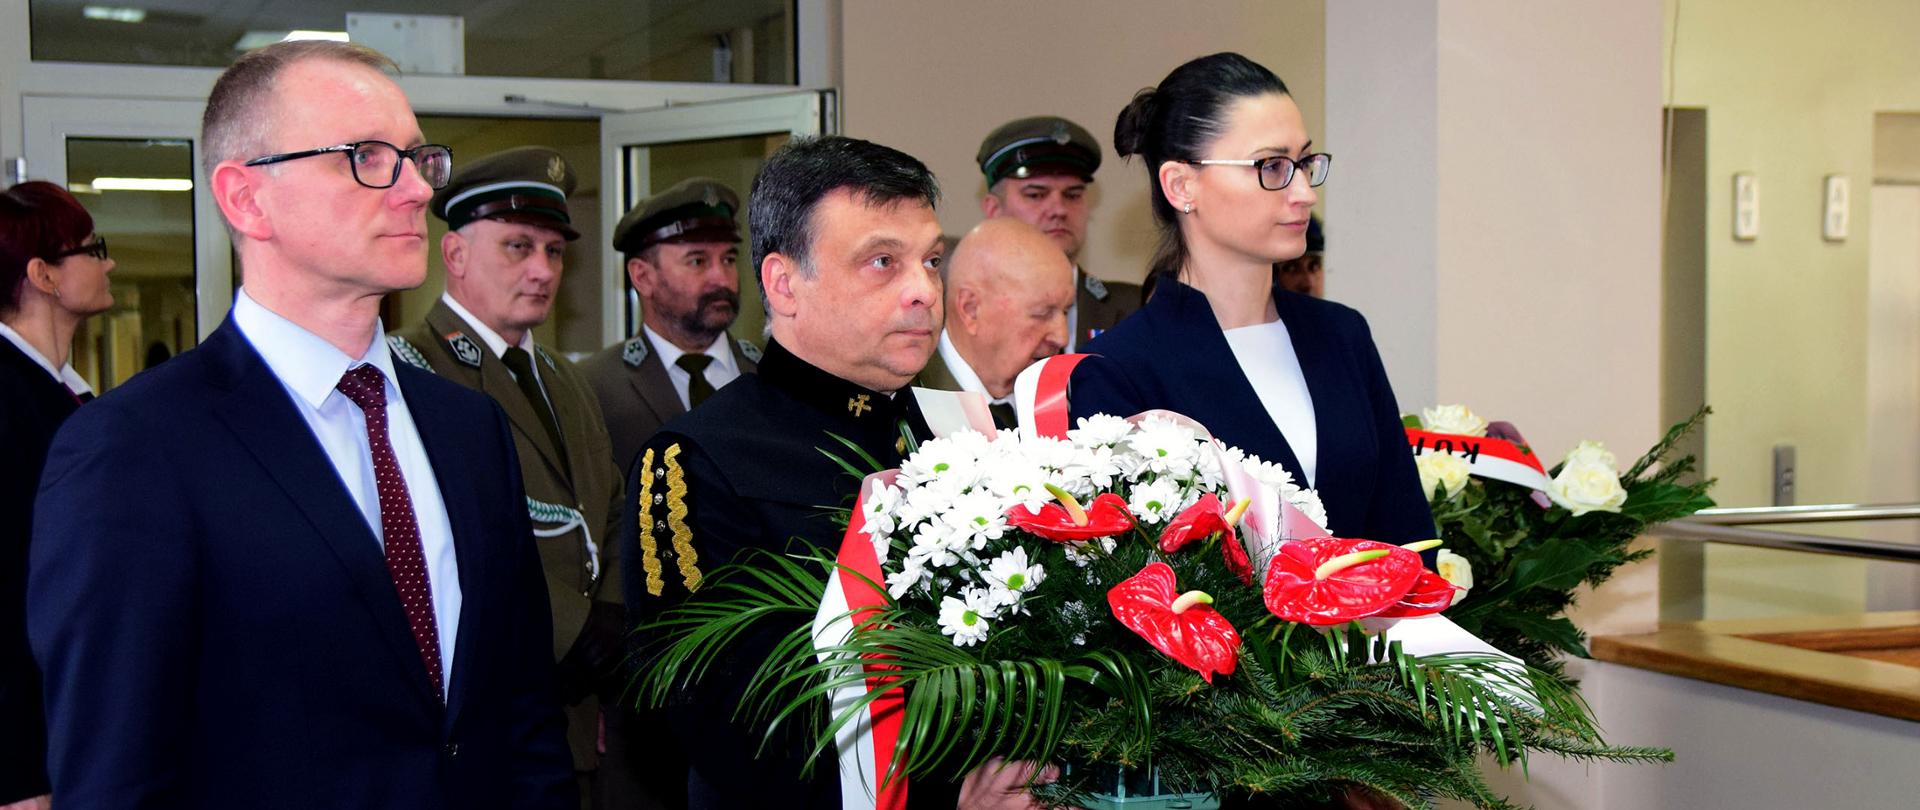 od lewej: dyrektor Grzegorz Mroczek, wiceminister Mariusz Orion Jędrysek, wiceminister Małgorzata Golińska